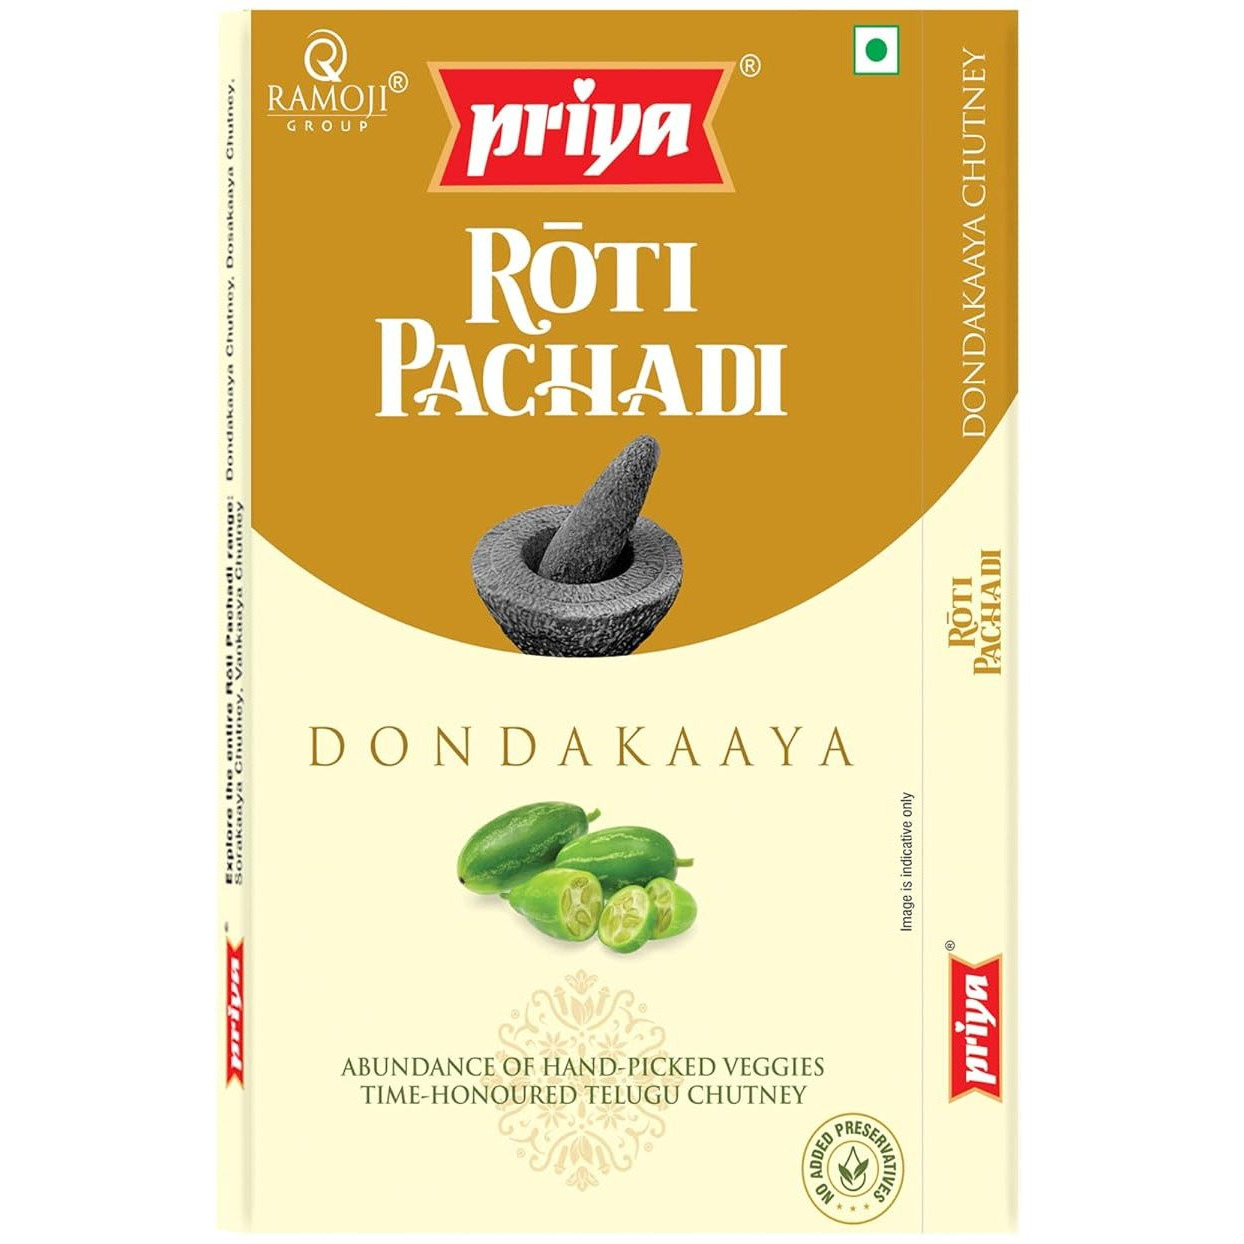 Case of 12 - Priya Roti Pachadi Ivy Gourd Chutney - 100 Gm (3.5 Oz)